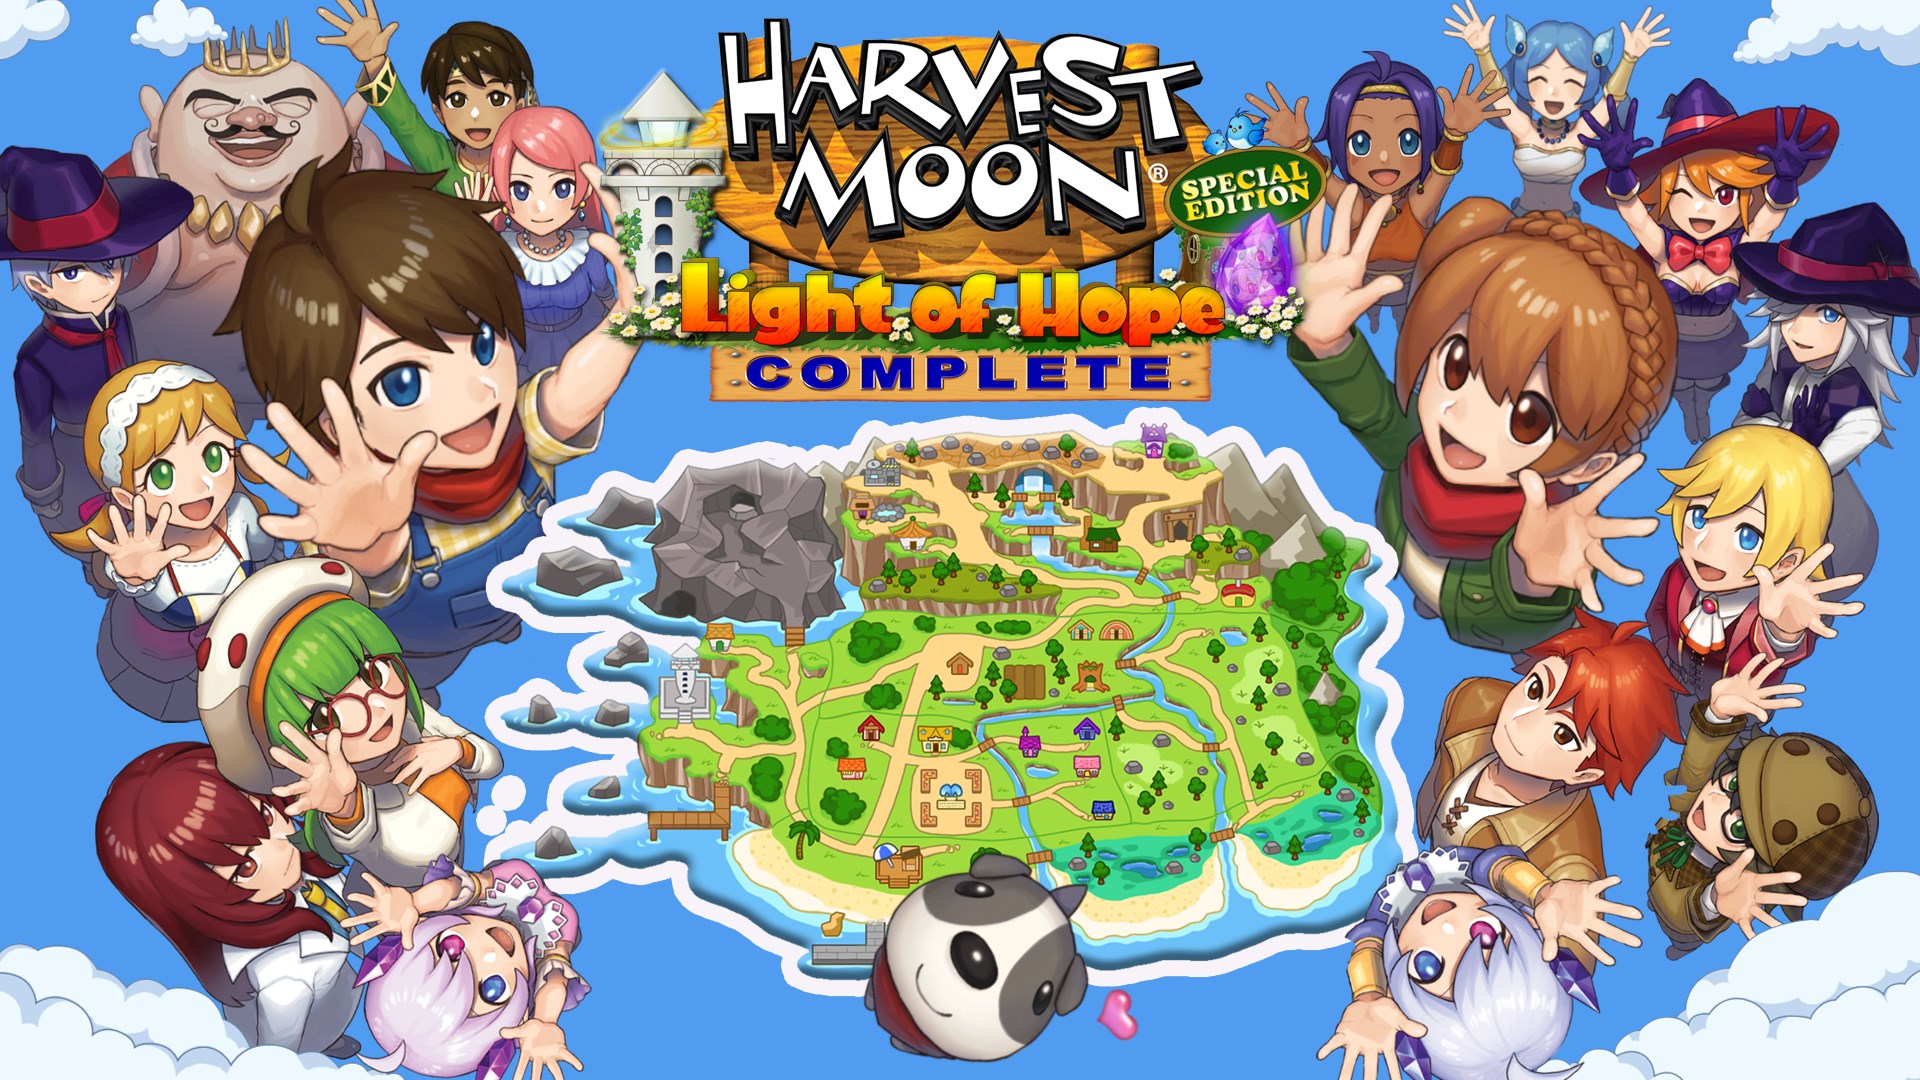 Find the best laptops for Harvest Moon: Light of Hope SE Complete